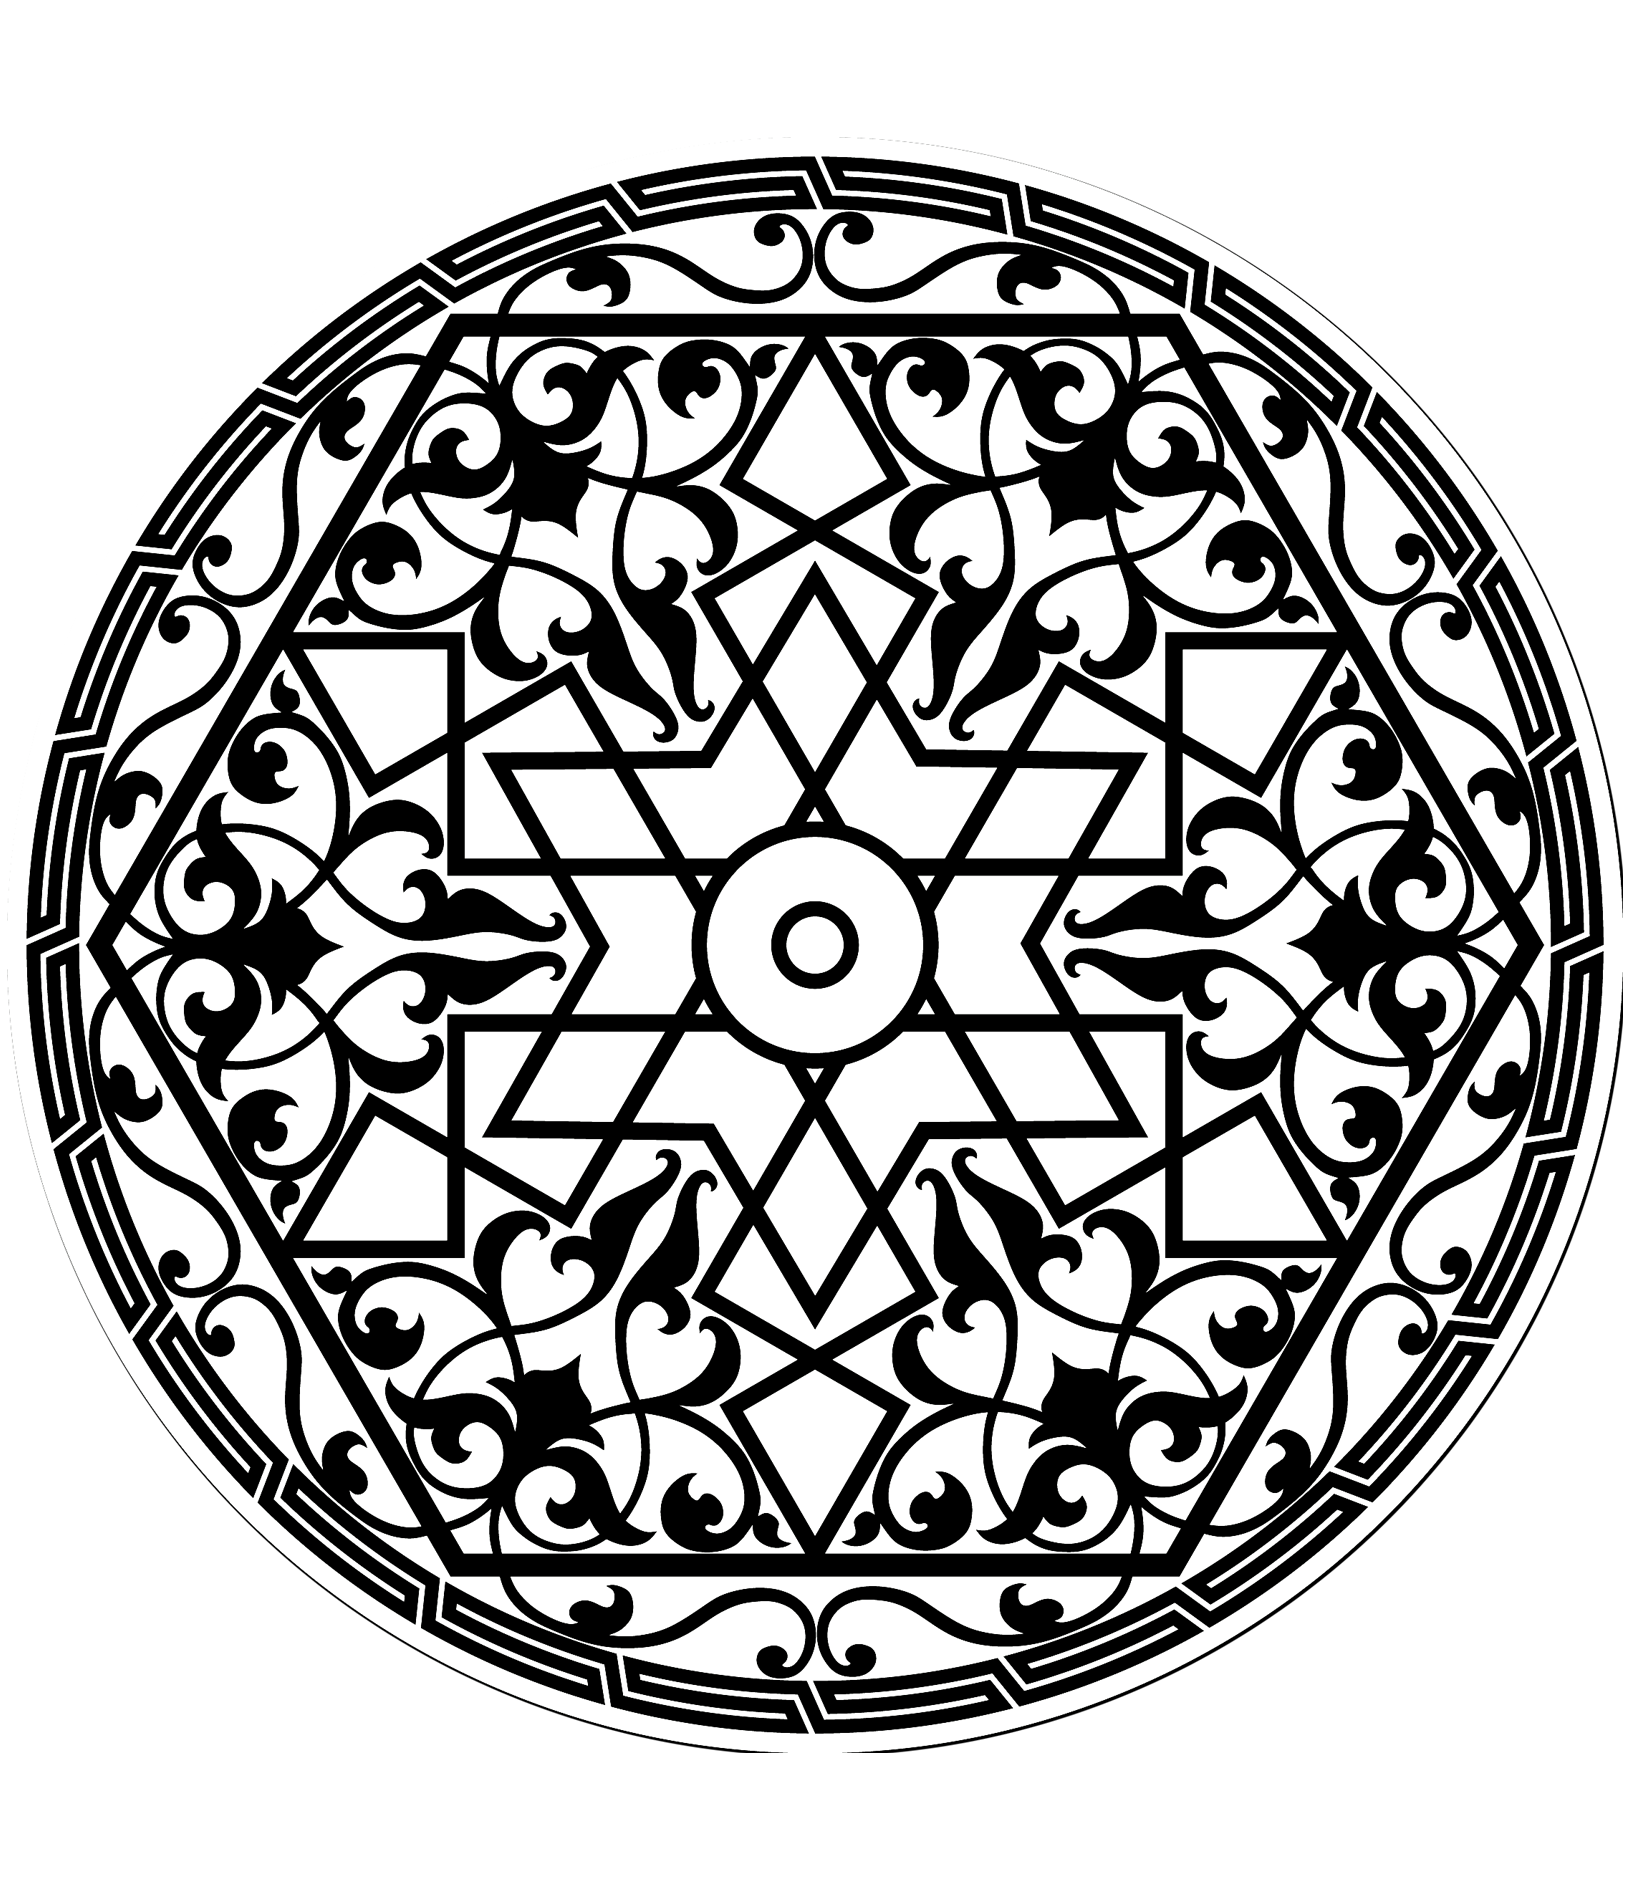 Dibujo de motivo árabe con una estrella en el centro